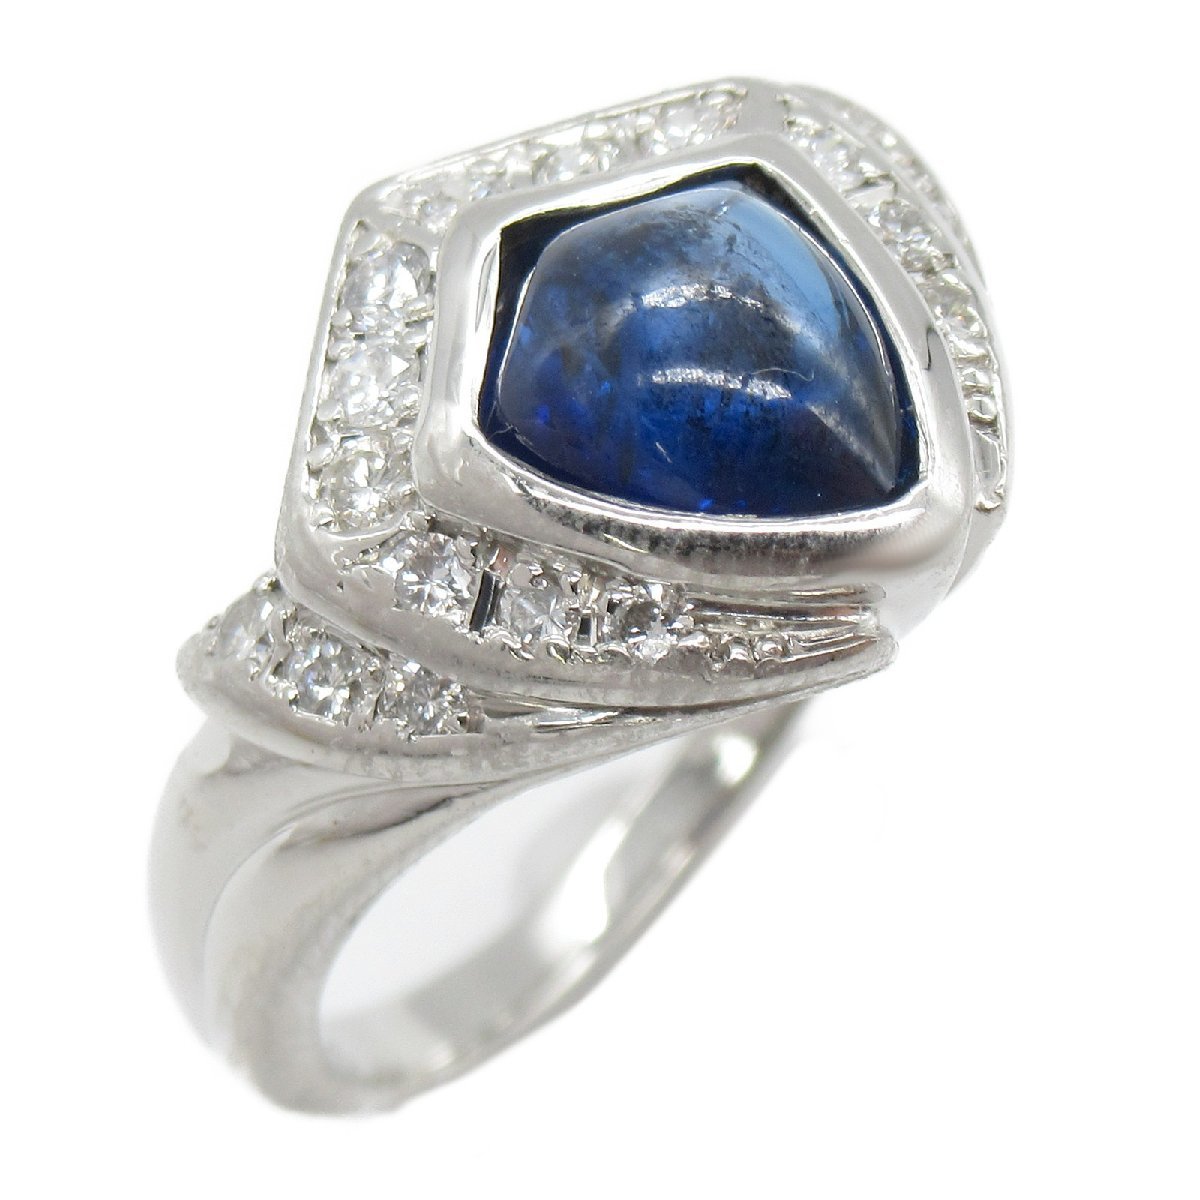 独特な店 ブルー リング ダイヤモンド サファイア 指輪 リング